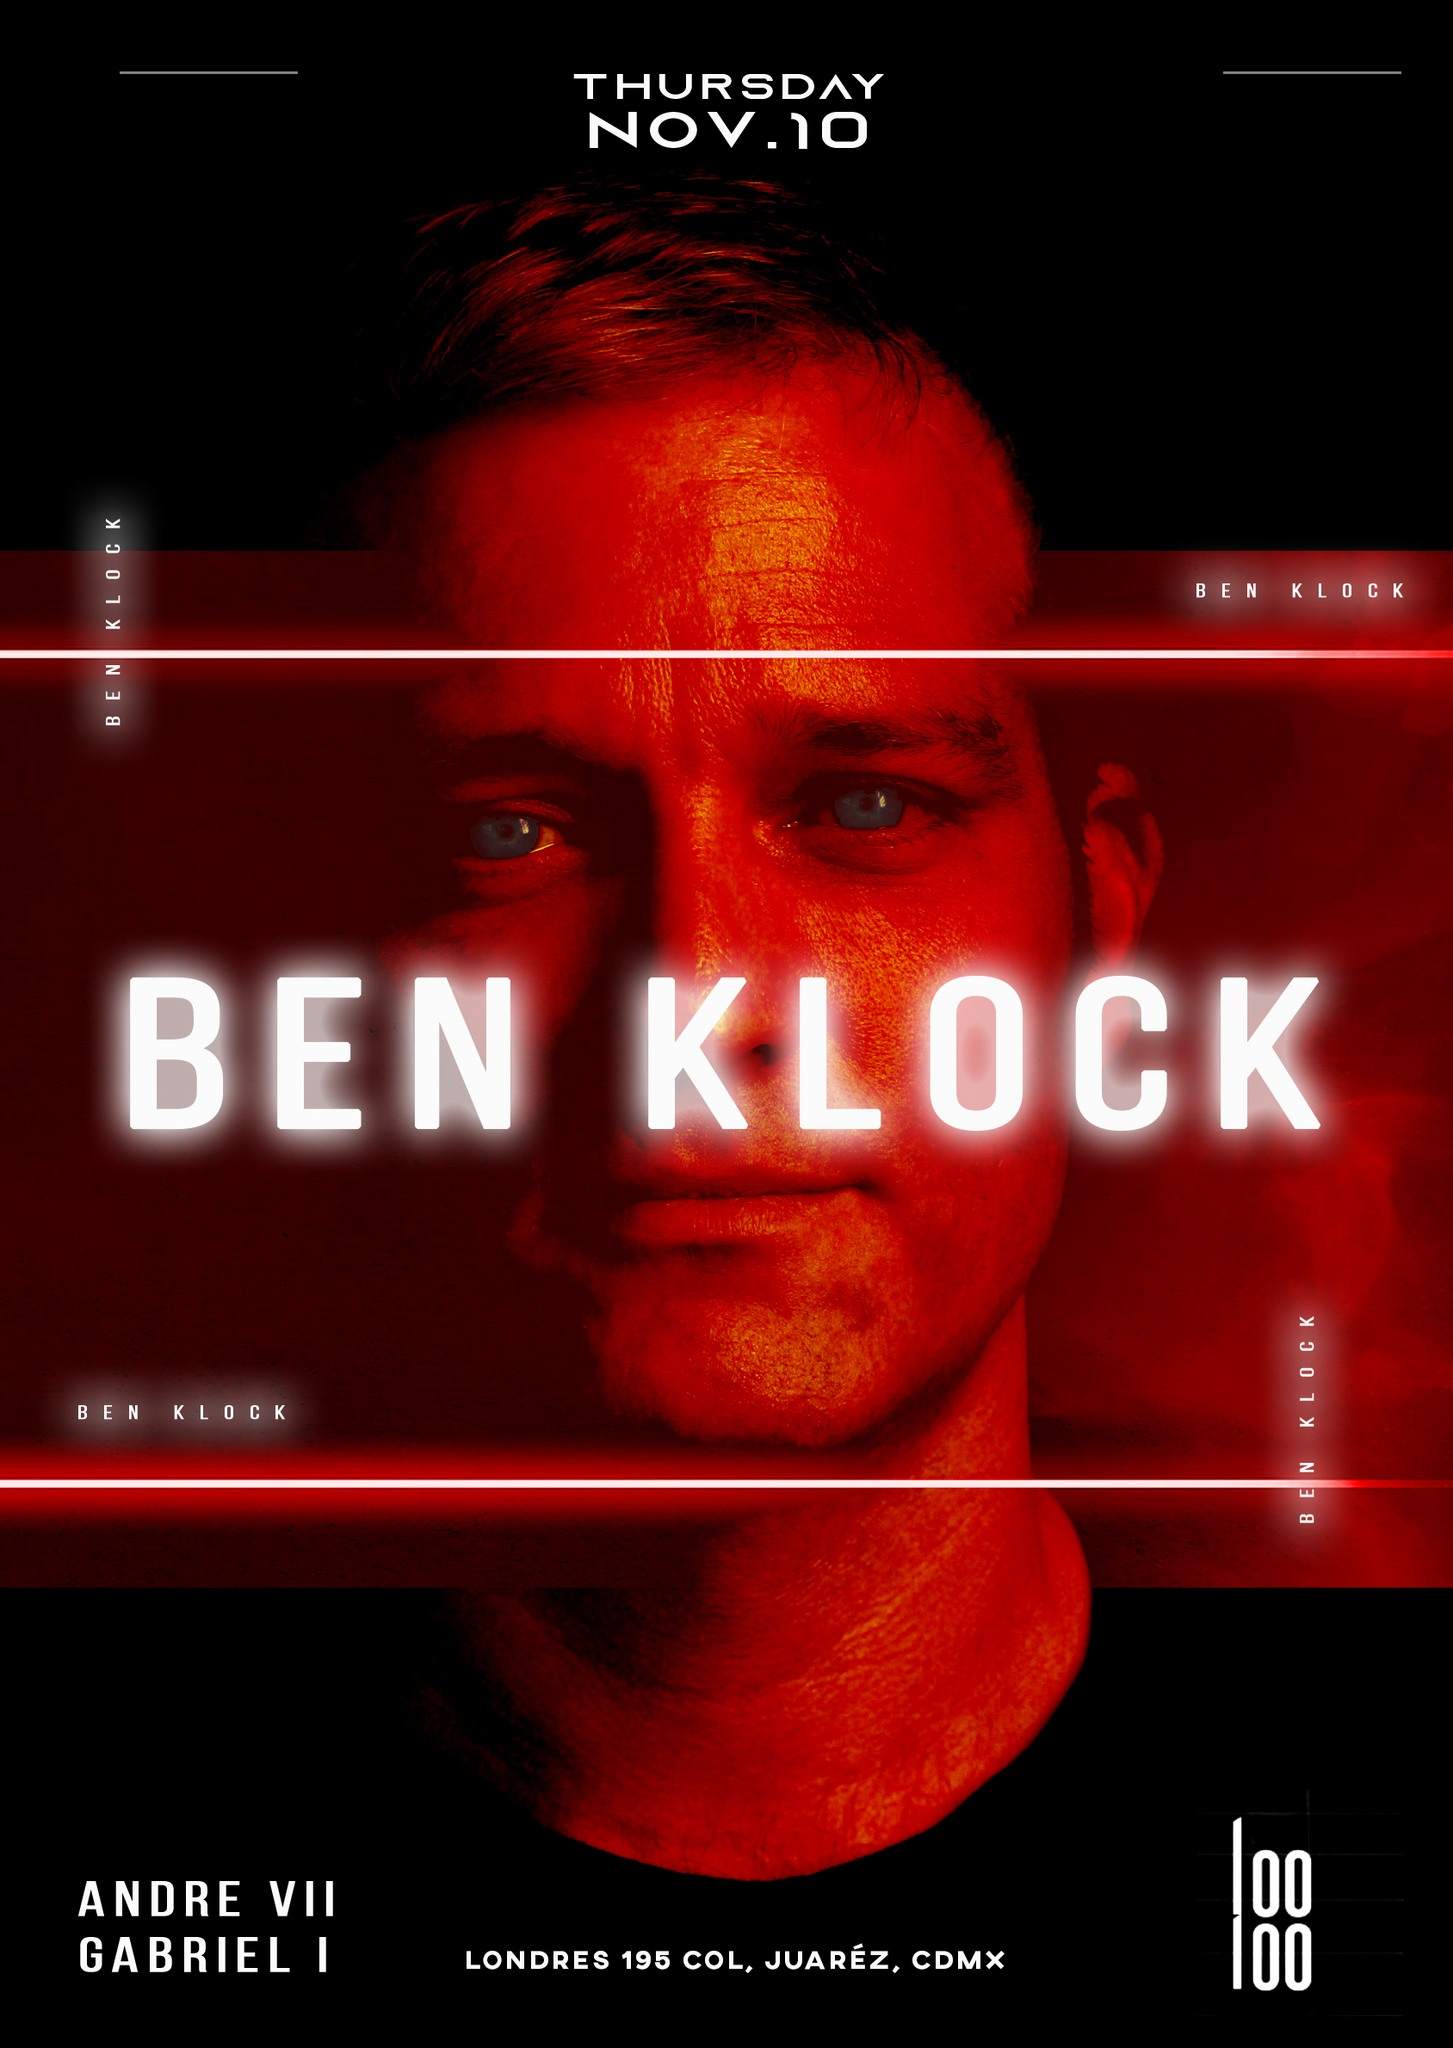 Ben Klock at looloo - フライヤー表